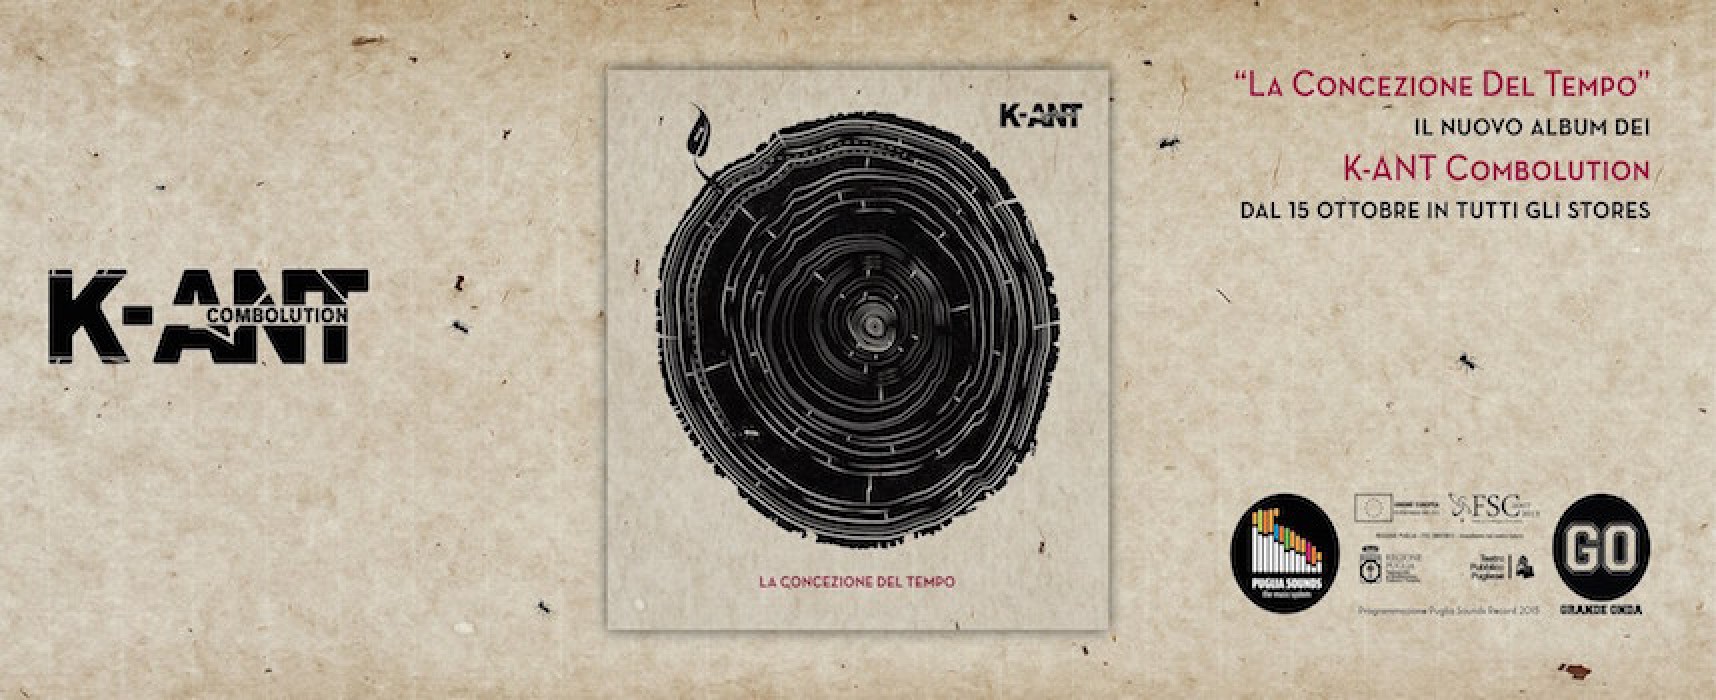 La concezione del tempo, disponibile il nuovo album dei K-ANT Combolution